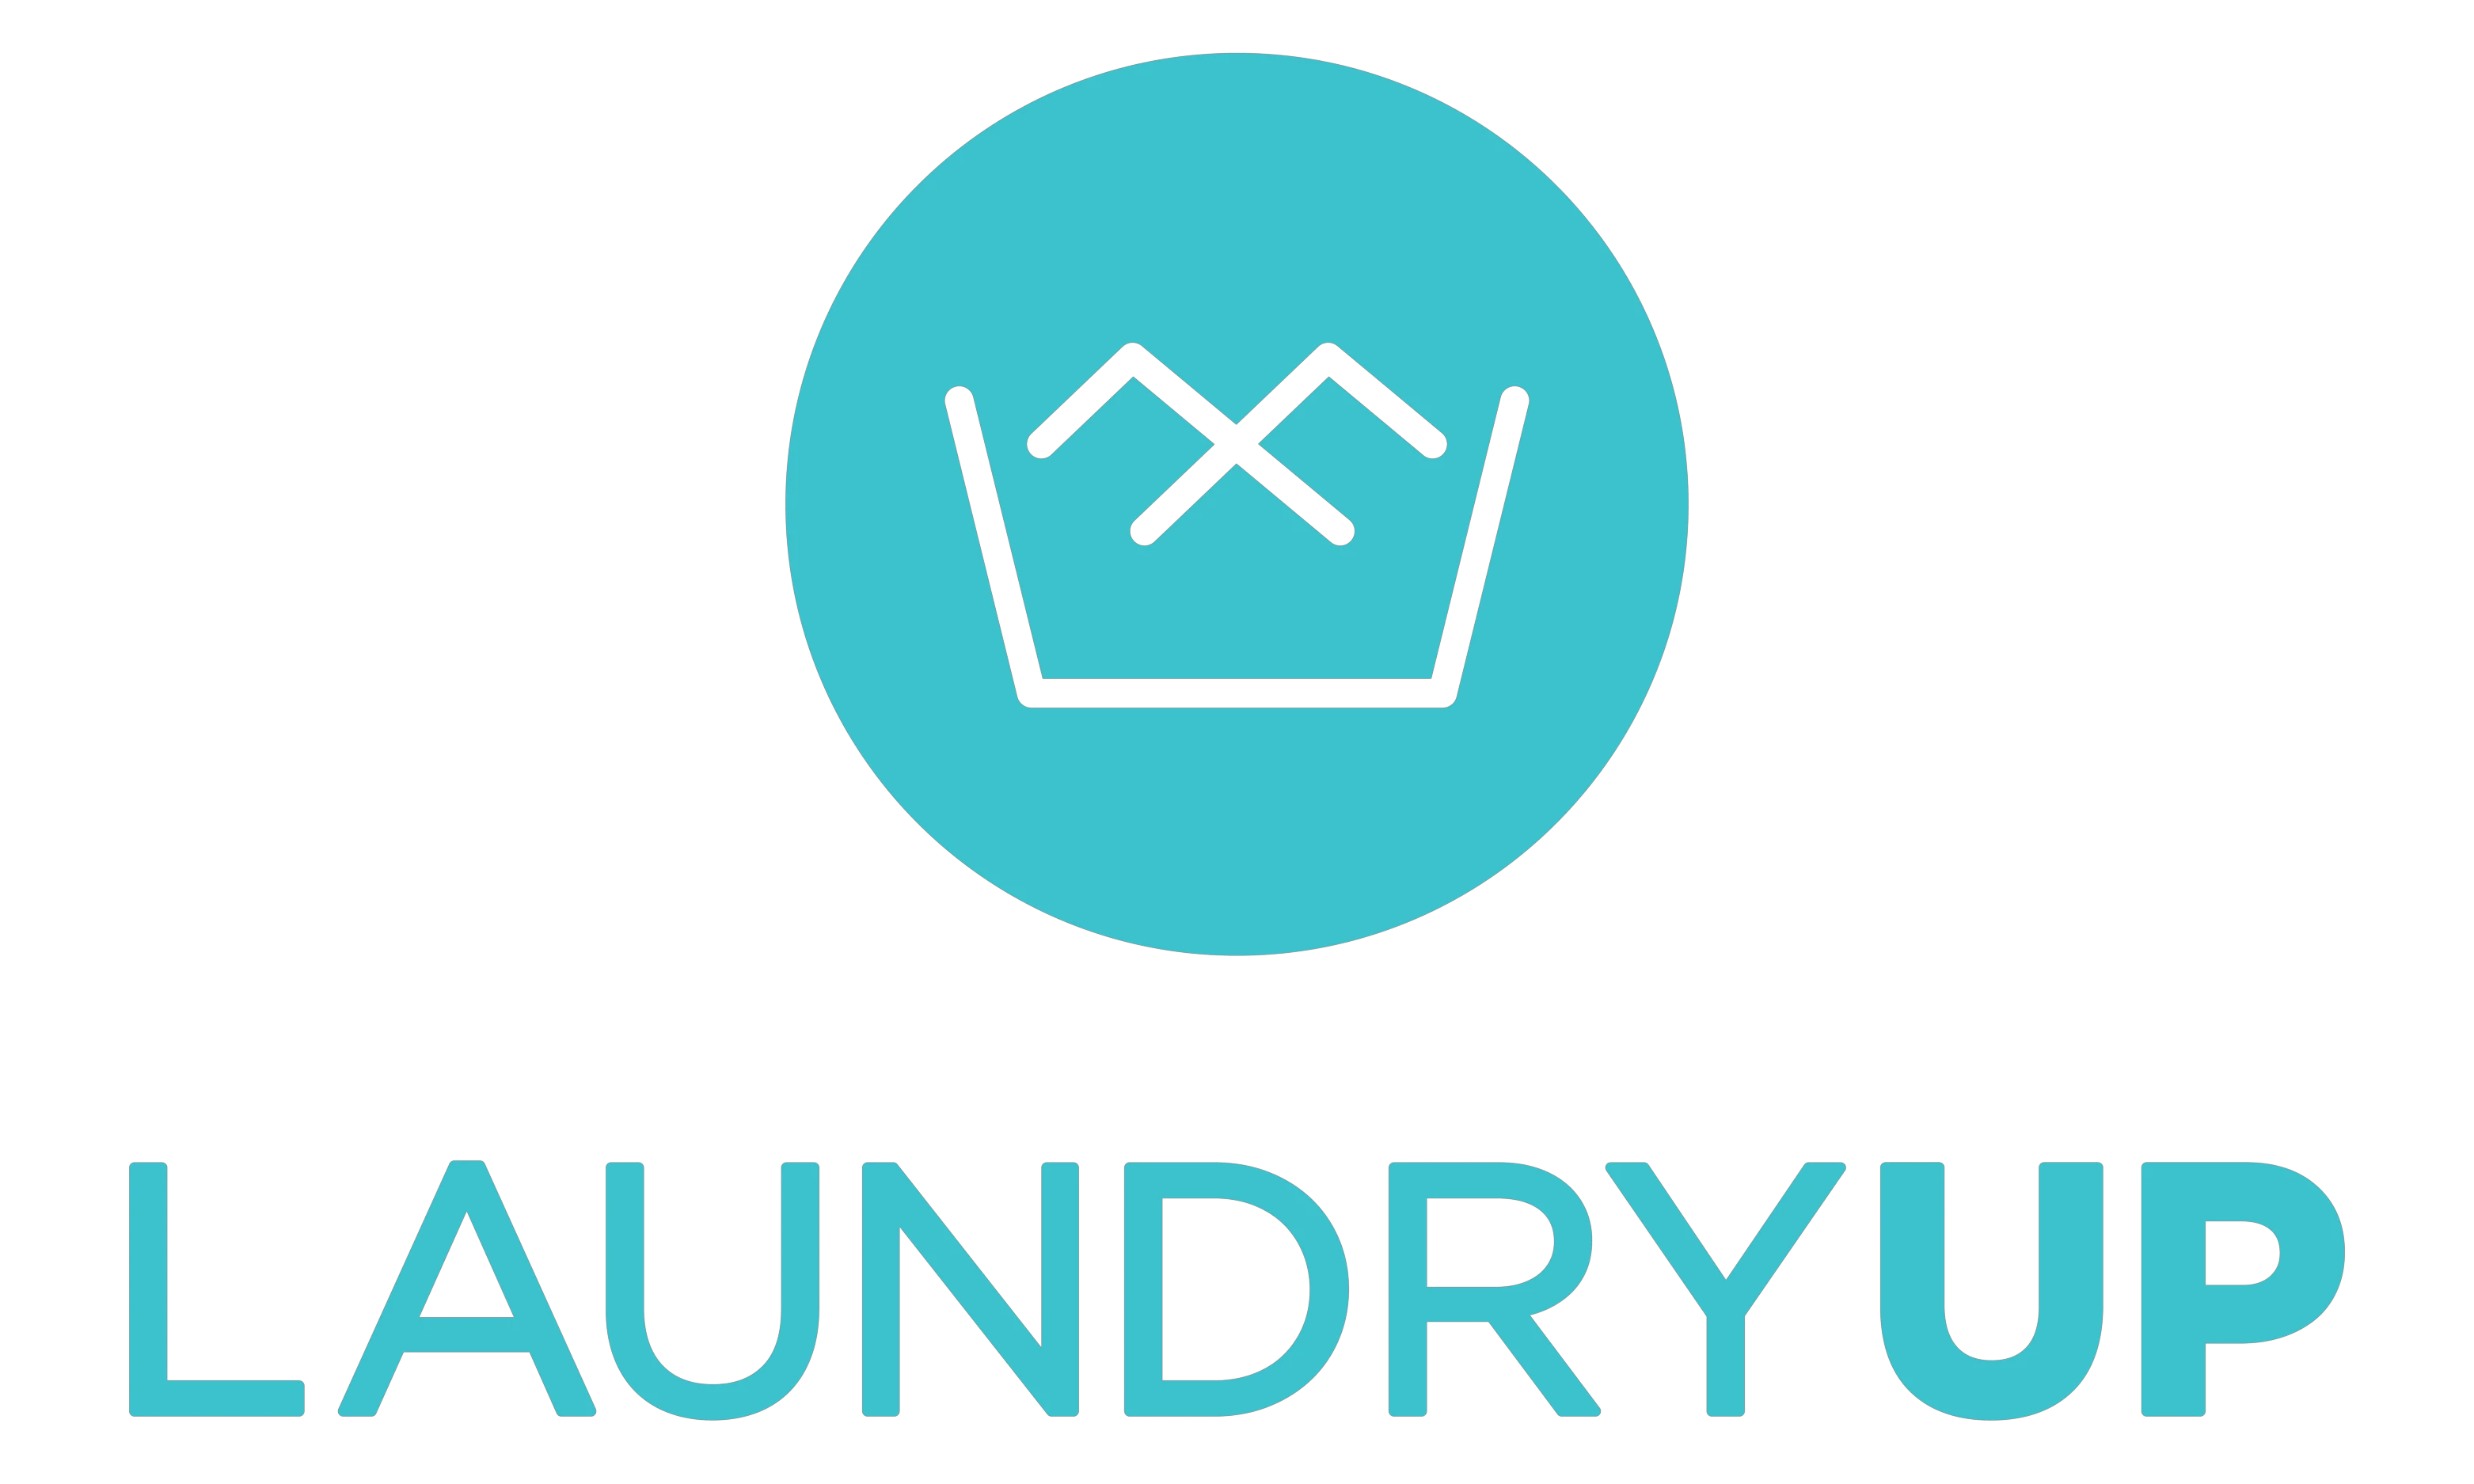  LaundryUp優惠券